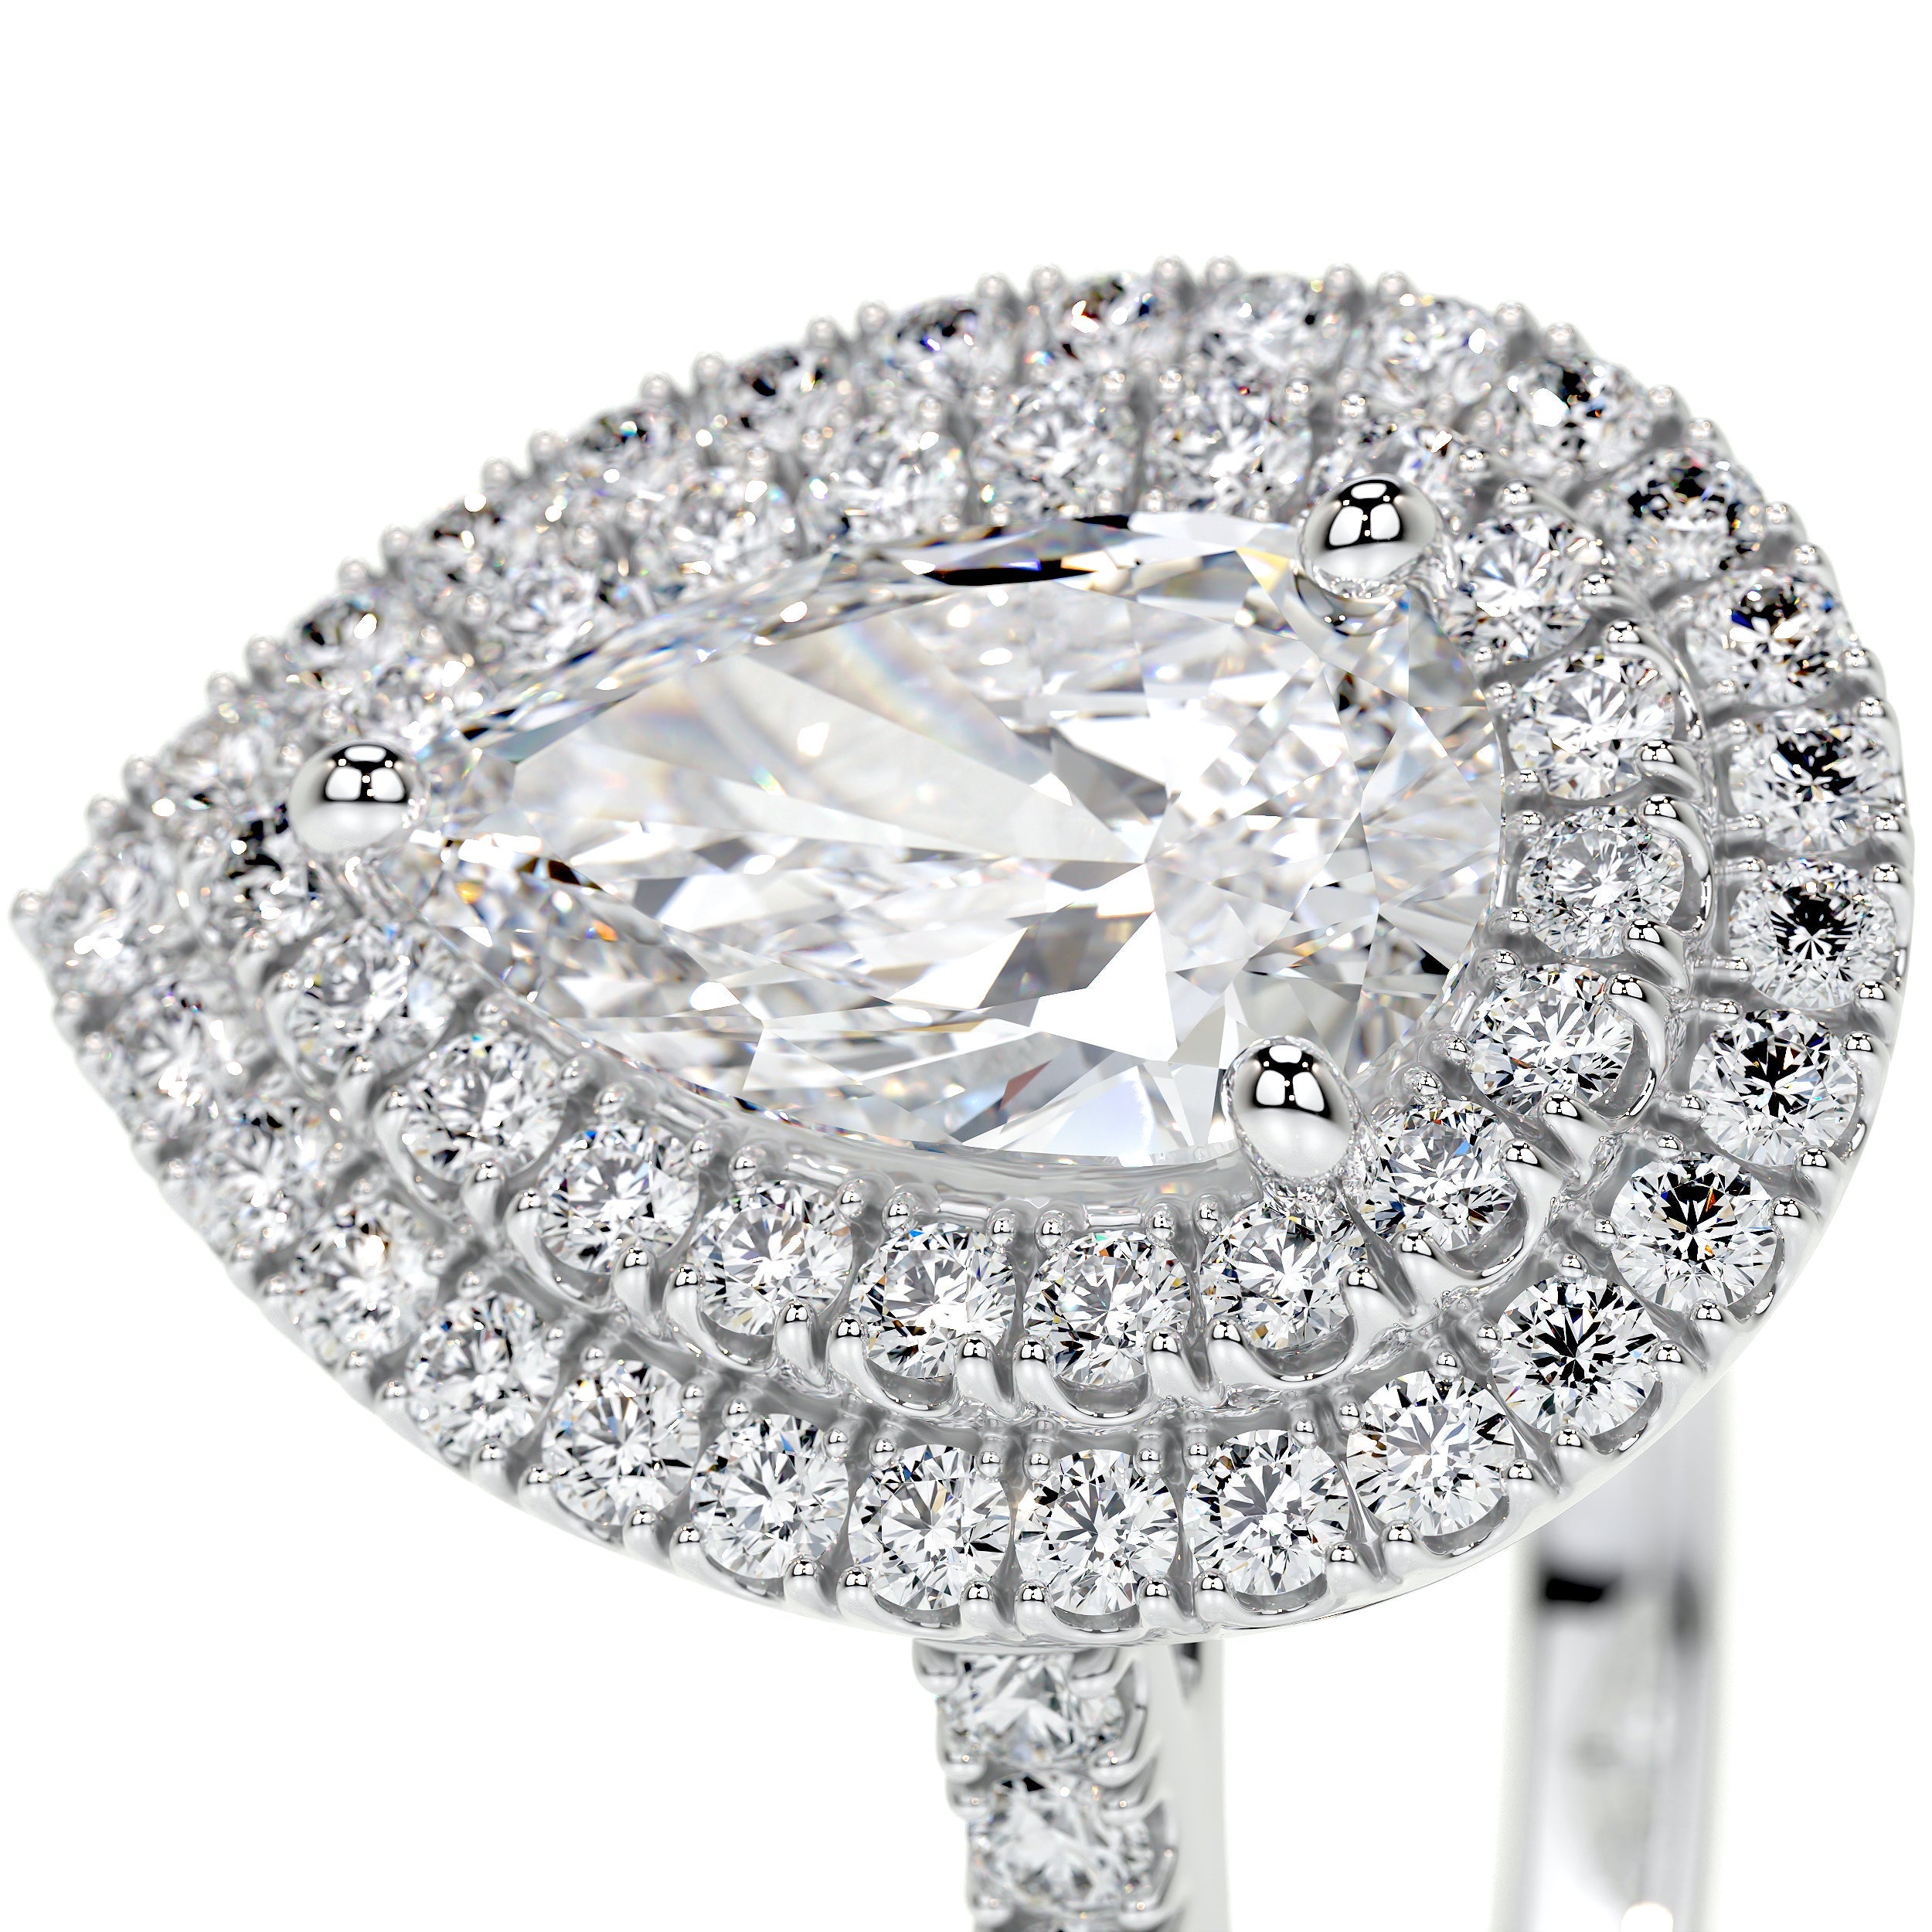 Gloria Lab Grown Diamond Ring   (1.65 Carat) -14K White Gold